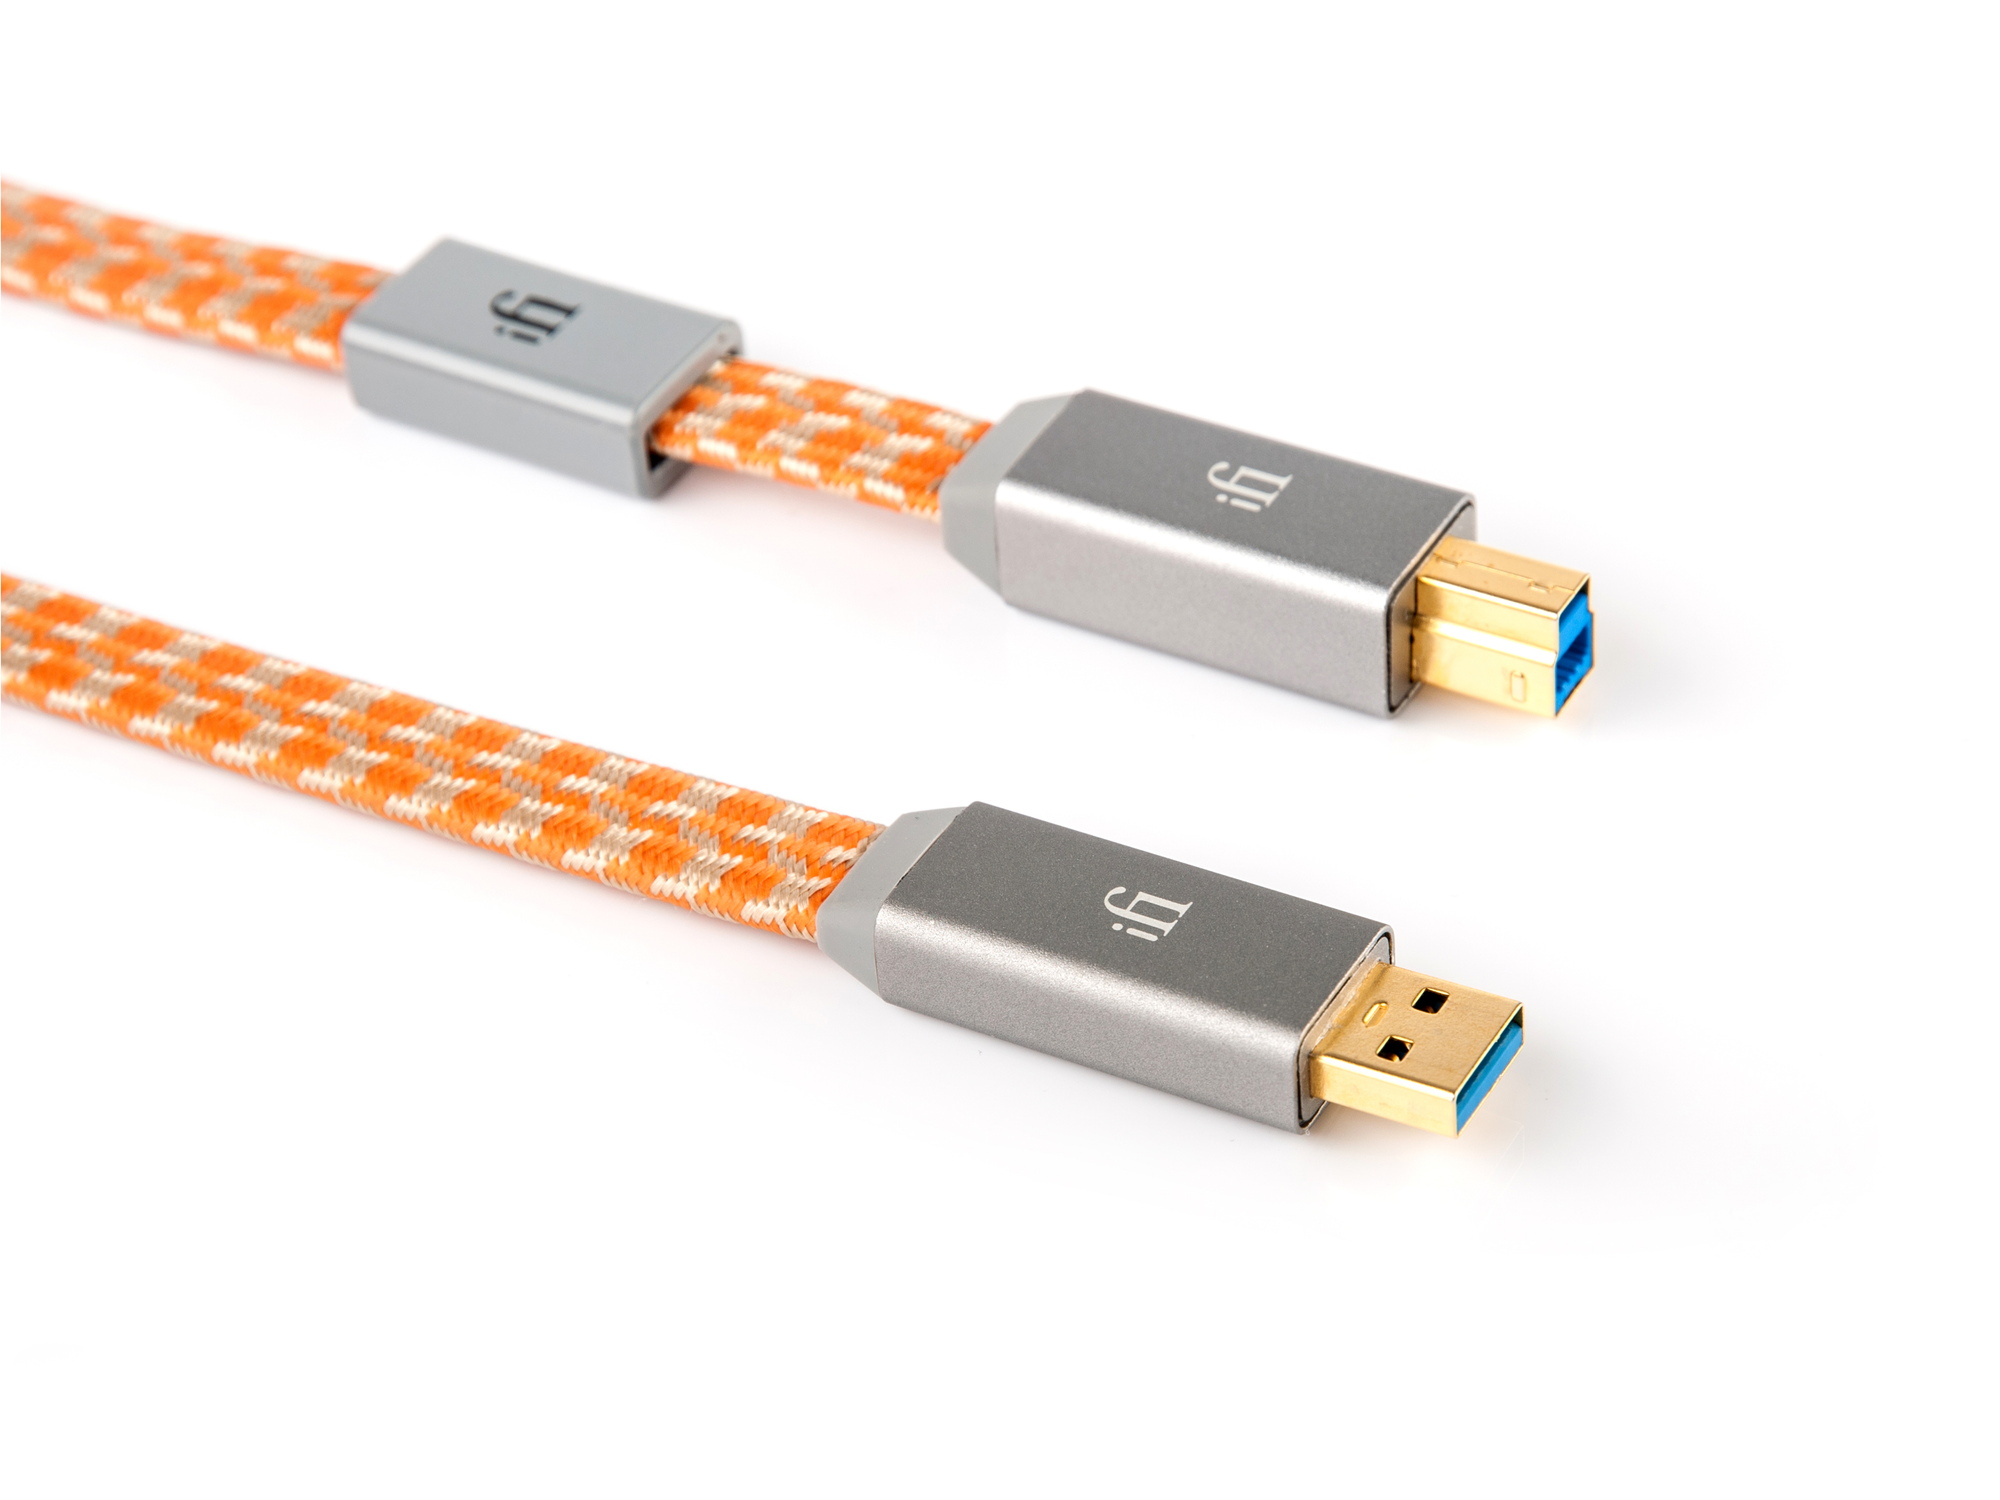 iFi Mercury 3.0 USB Cable